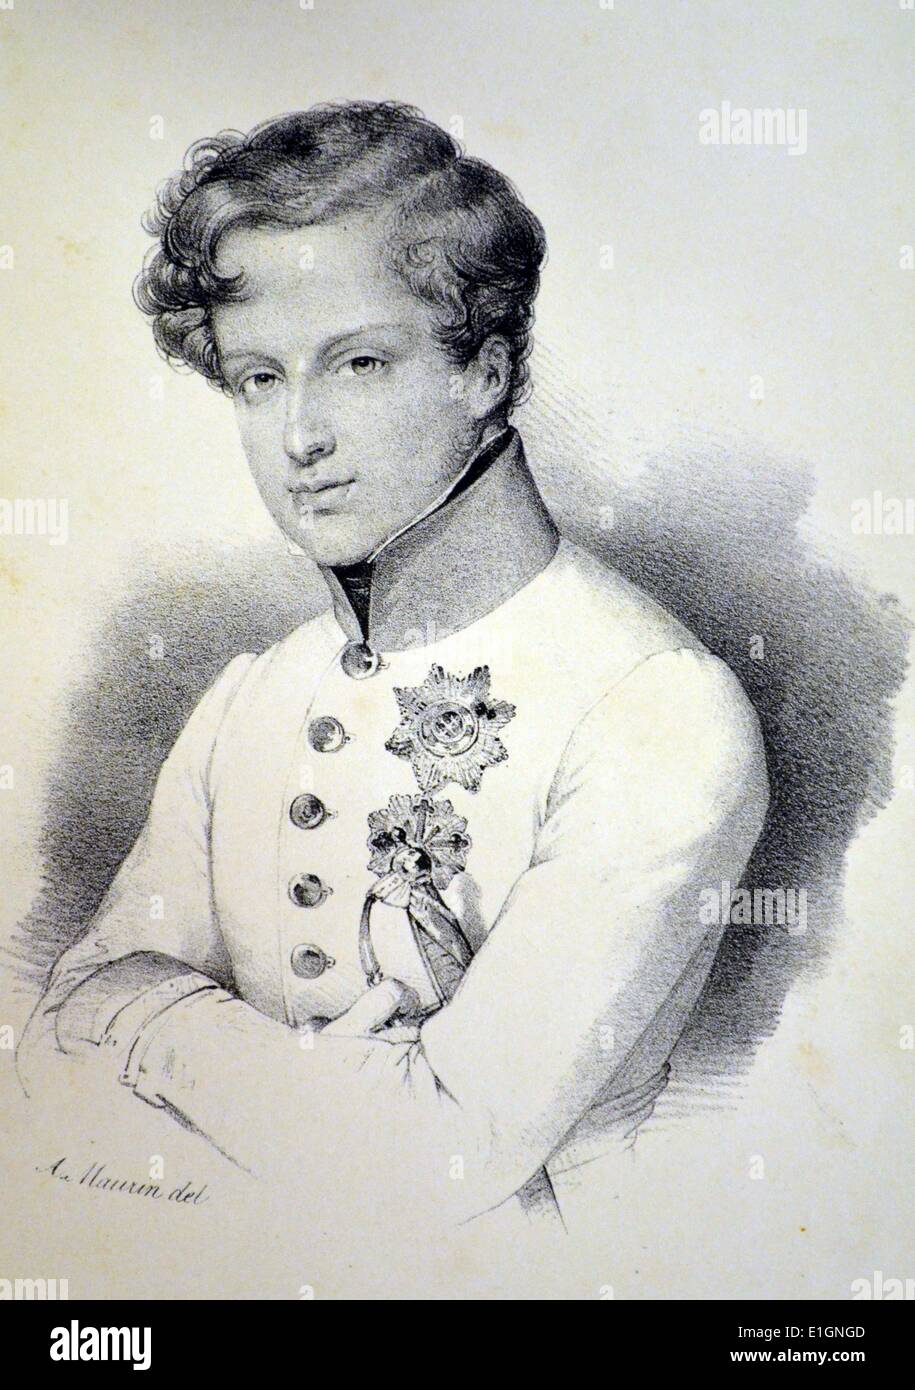 Napoléon II, duc de Reichstadt, aussi connu comme le roi de Rome (1811-1832), fils de Napoléon Ier et de Marie Louise d'Autriche, lithographie, Paris, c1840. Banque D'Images